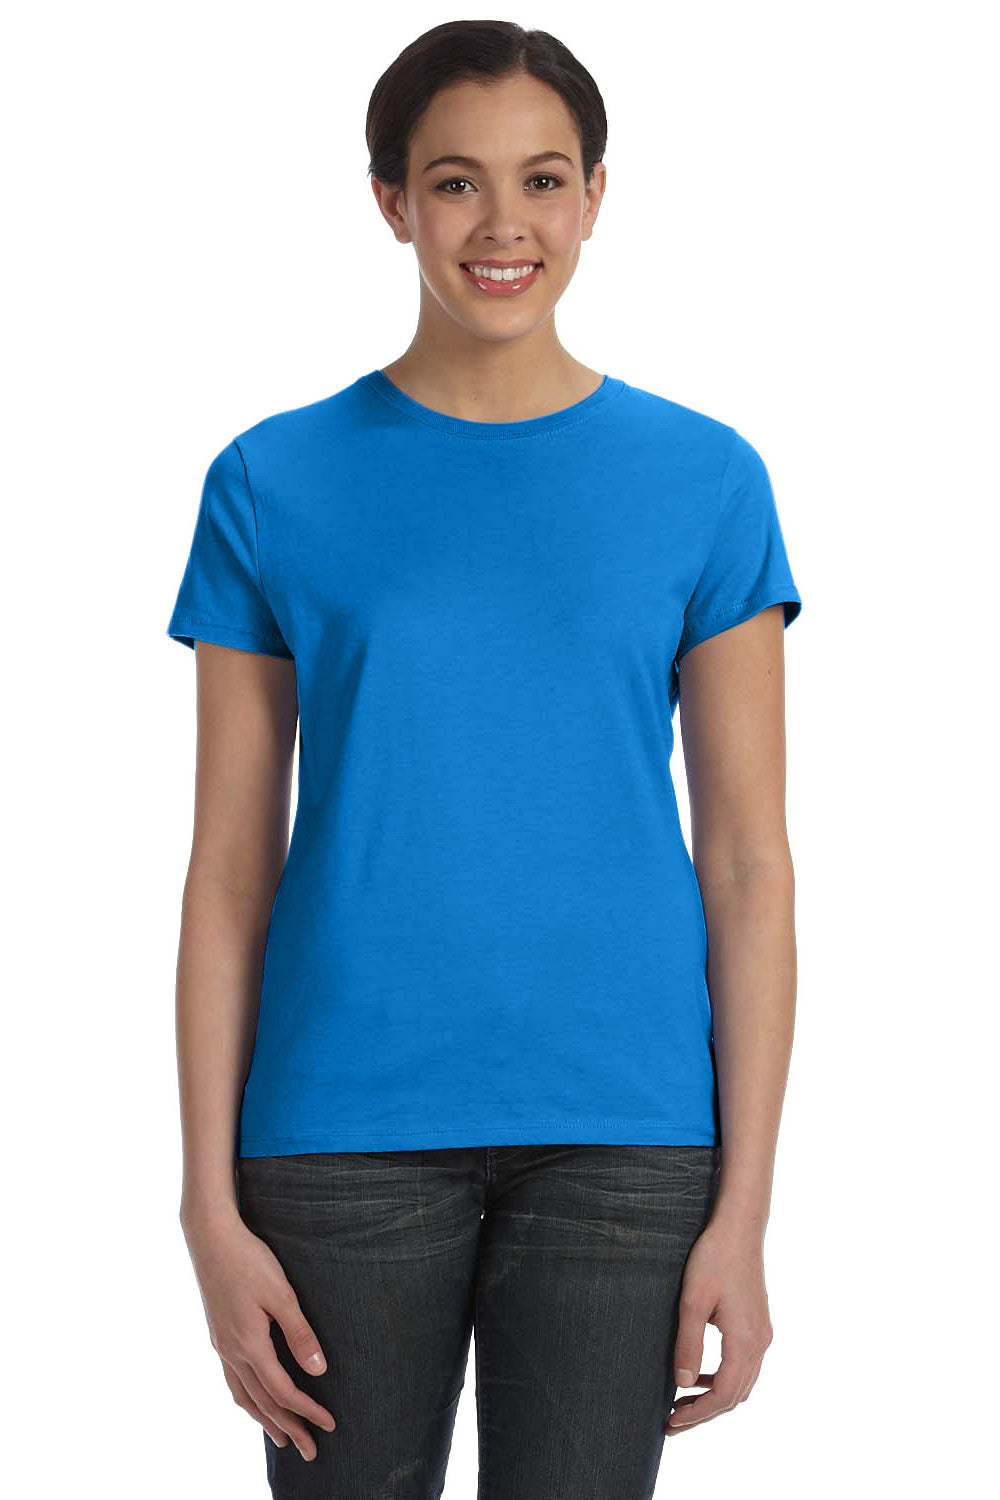 Hanes SL04 Nano-T Short Sleeve Crewneck T-Shirt Breeze Blue Front